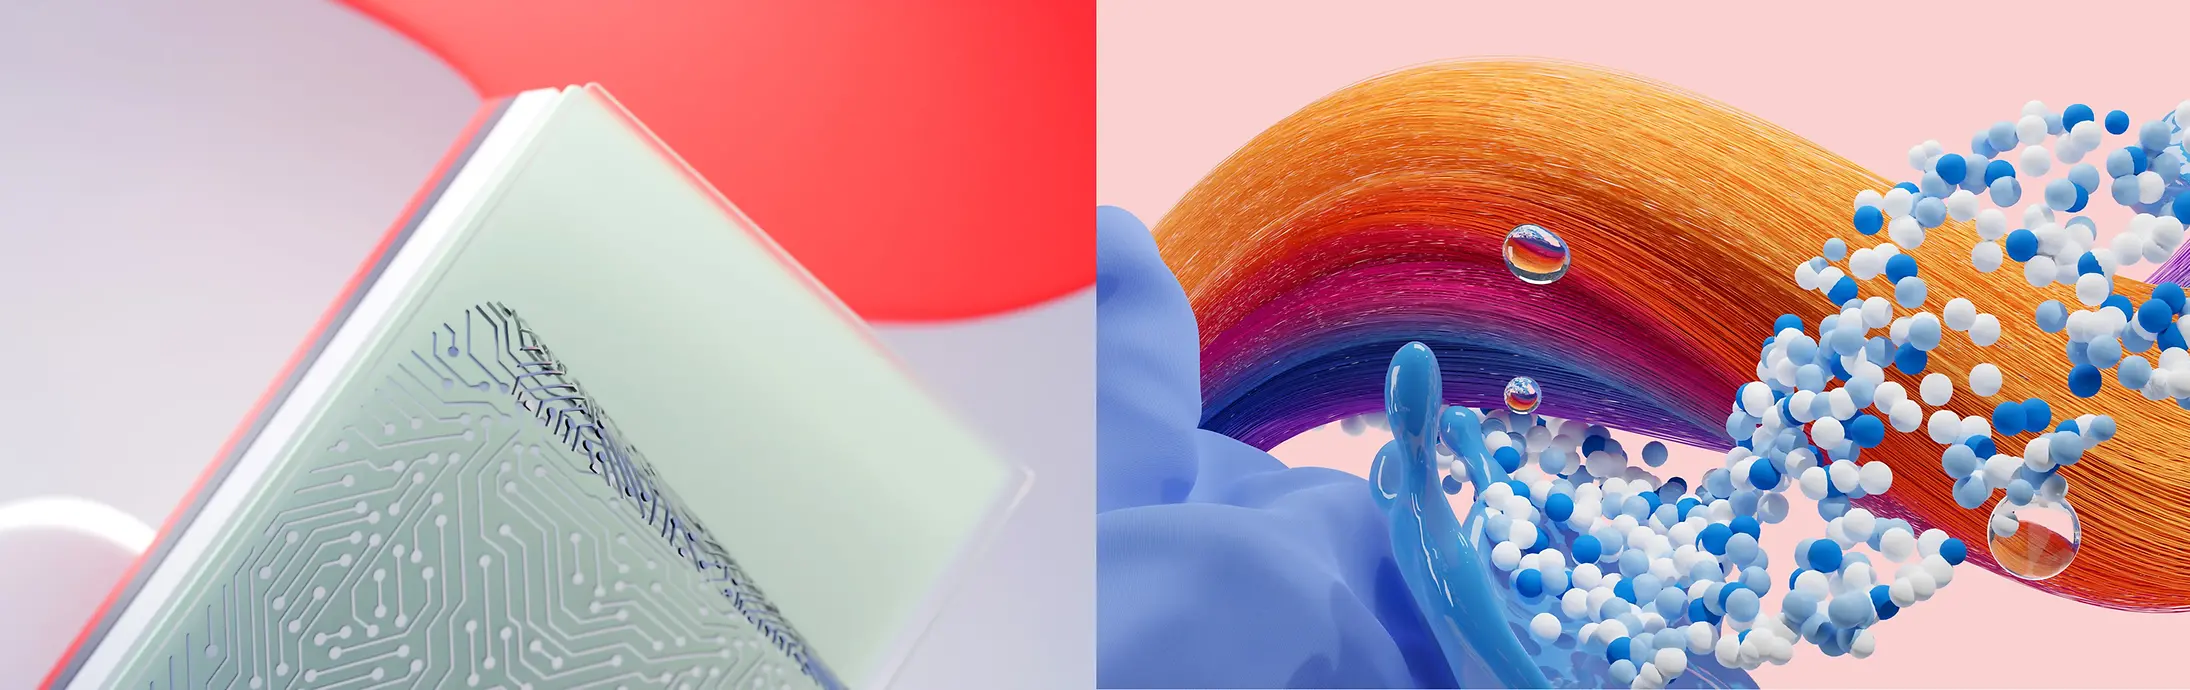 Abstraktní obrázek představující divize firmy Henkel Adhesive Technologies, Hair a Laundry & Home Care.